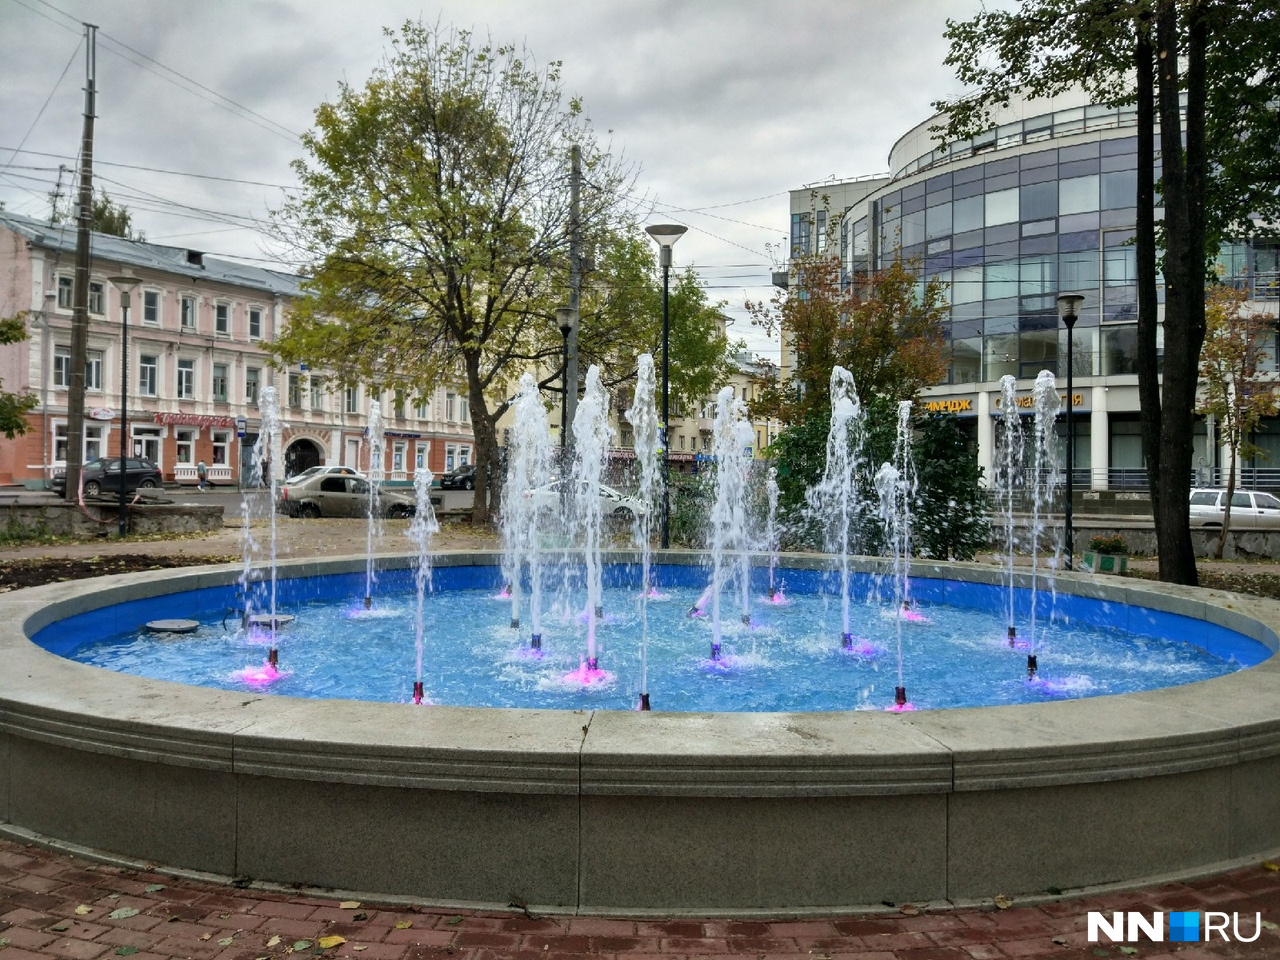 Обновленный фонтан находится в Чернопрудном переулке